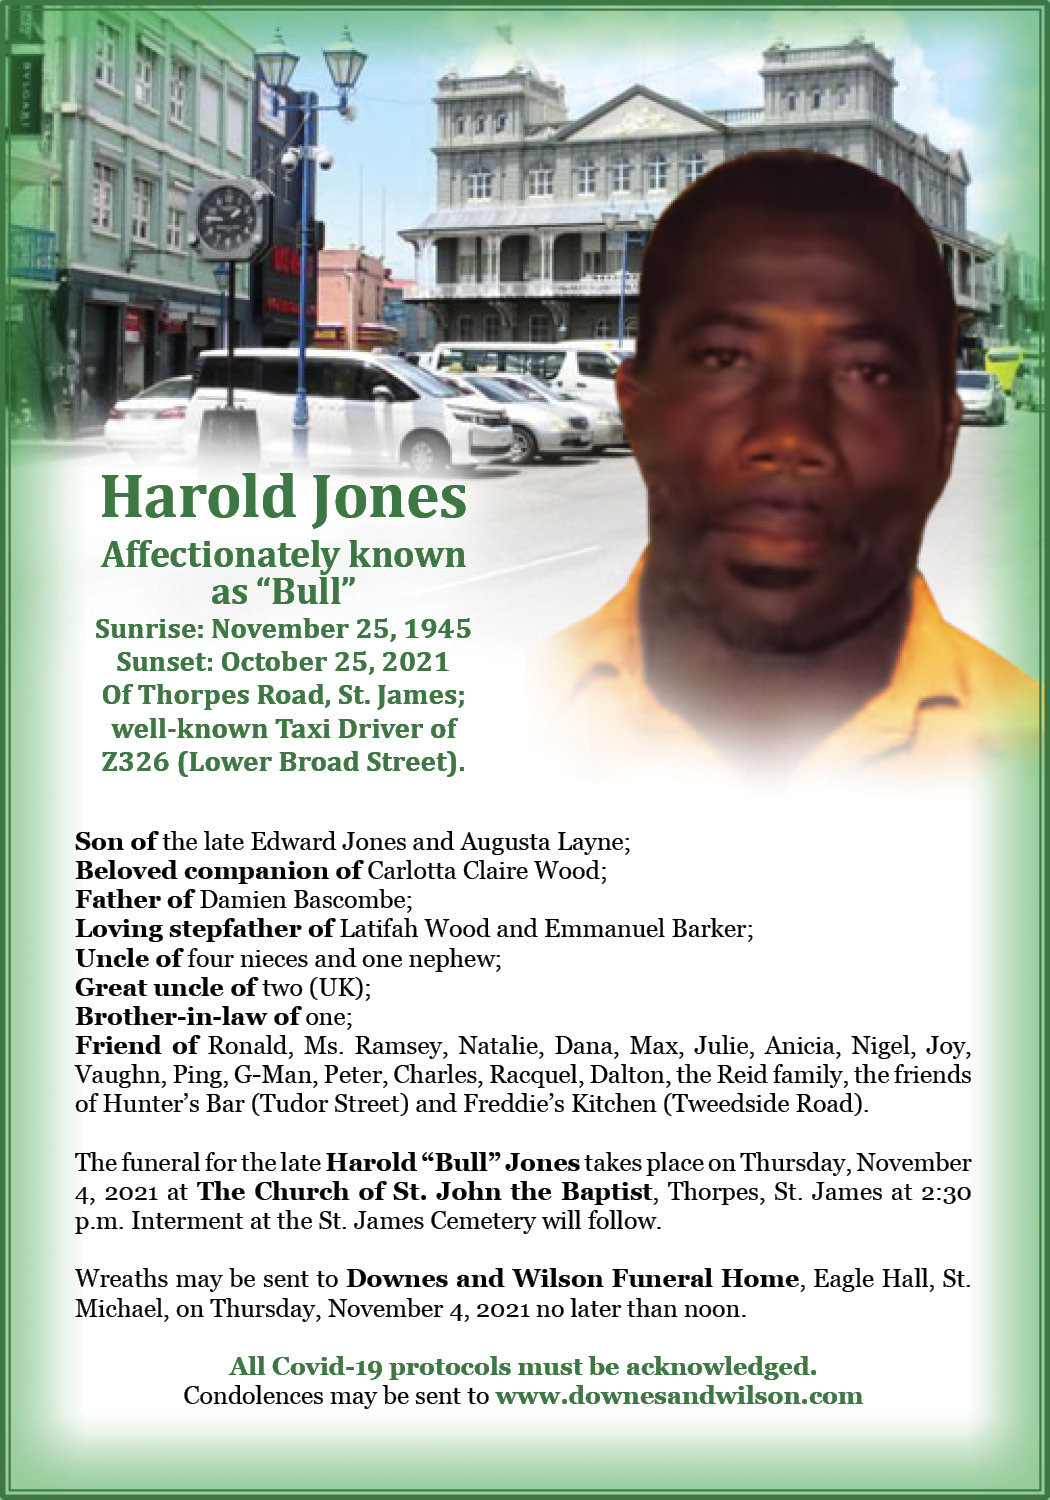 Harold Jones Downes & Wilson Funeral Home